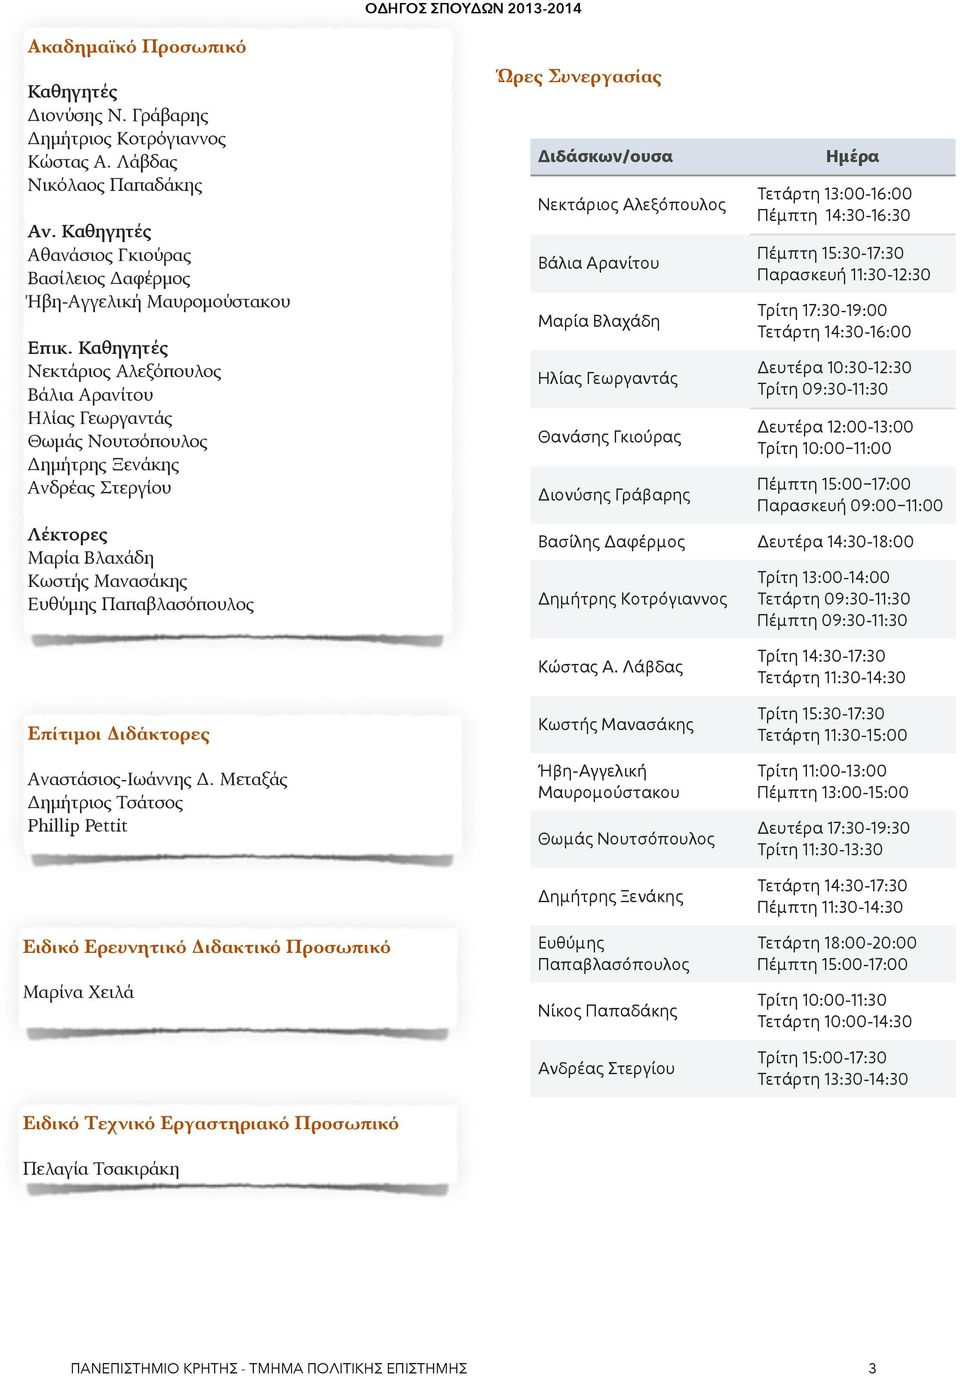 2013-2014 Ώρες Συνεργασίας Διδάσκων/ουσα Νεκτάριος Αλεξόπουλος Βάλια Αρανίτου Μαρία Βλαχάδη Ηλίας Γεωργαντάς Θανάσης Γκιούρας Διονύσης Γράβαρης Ημέρα Τετάρτη 13:00-16:00 Πέμπτη 14:30-16:30 Πέμπτη